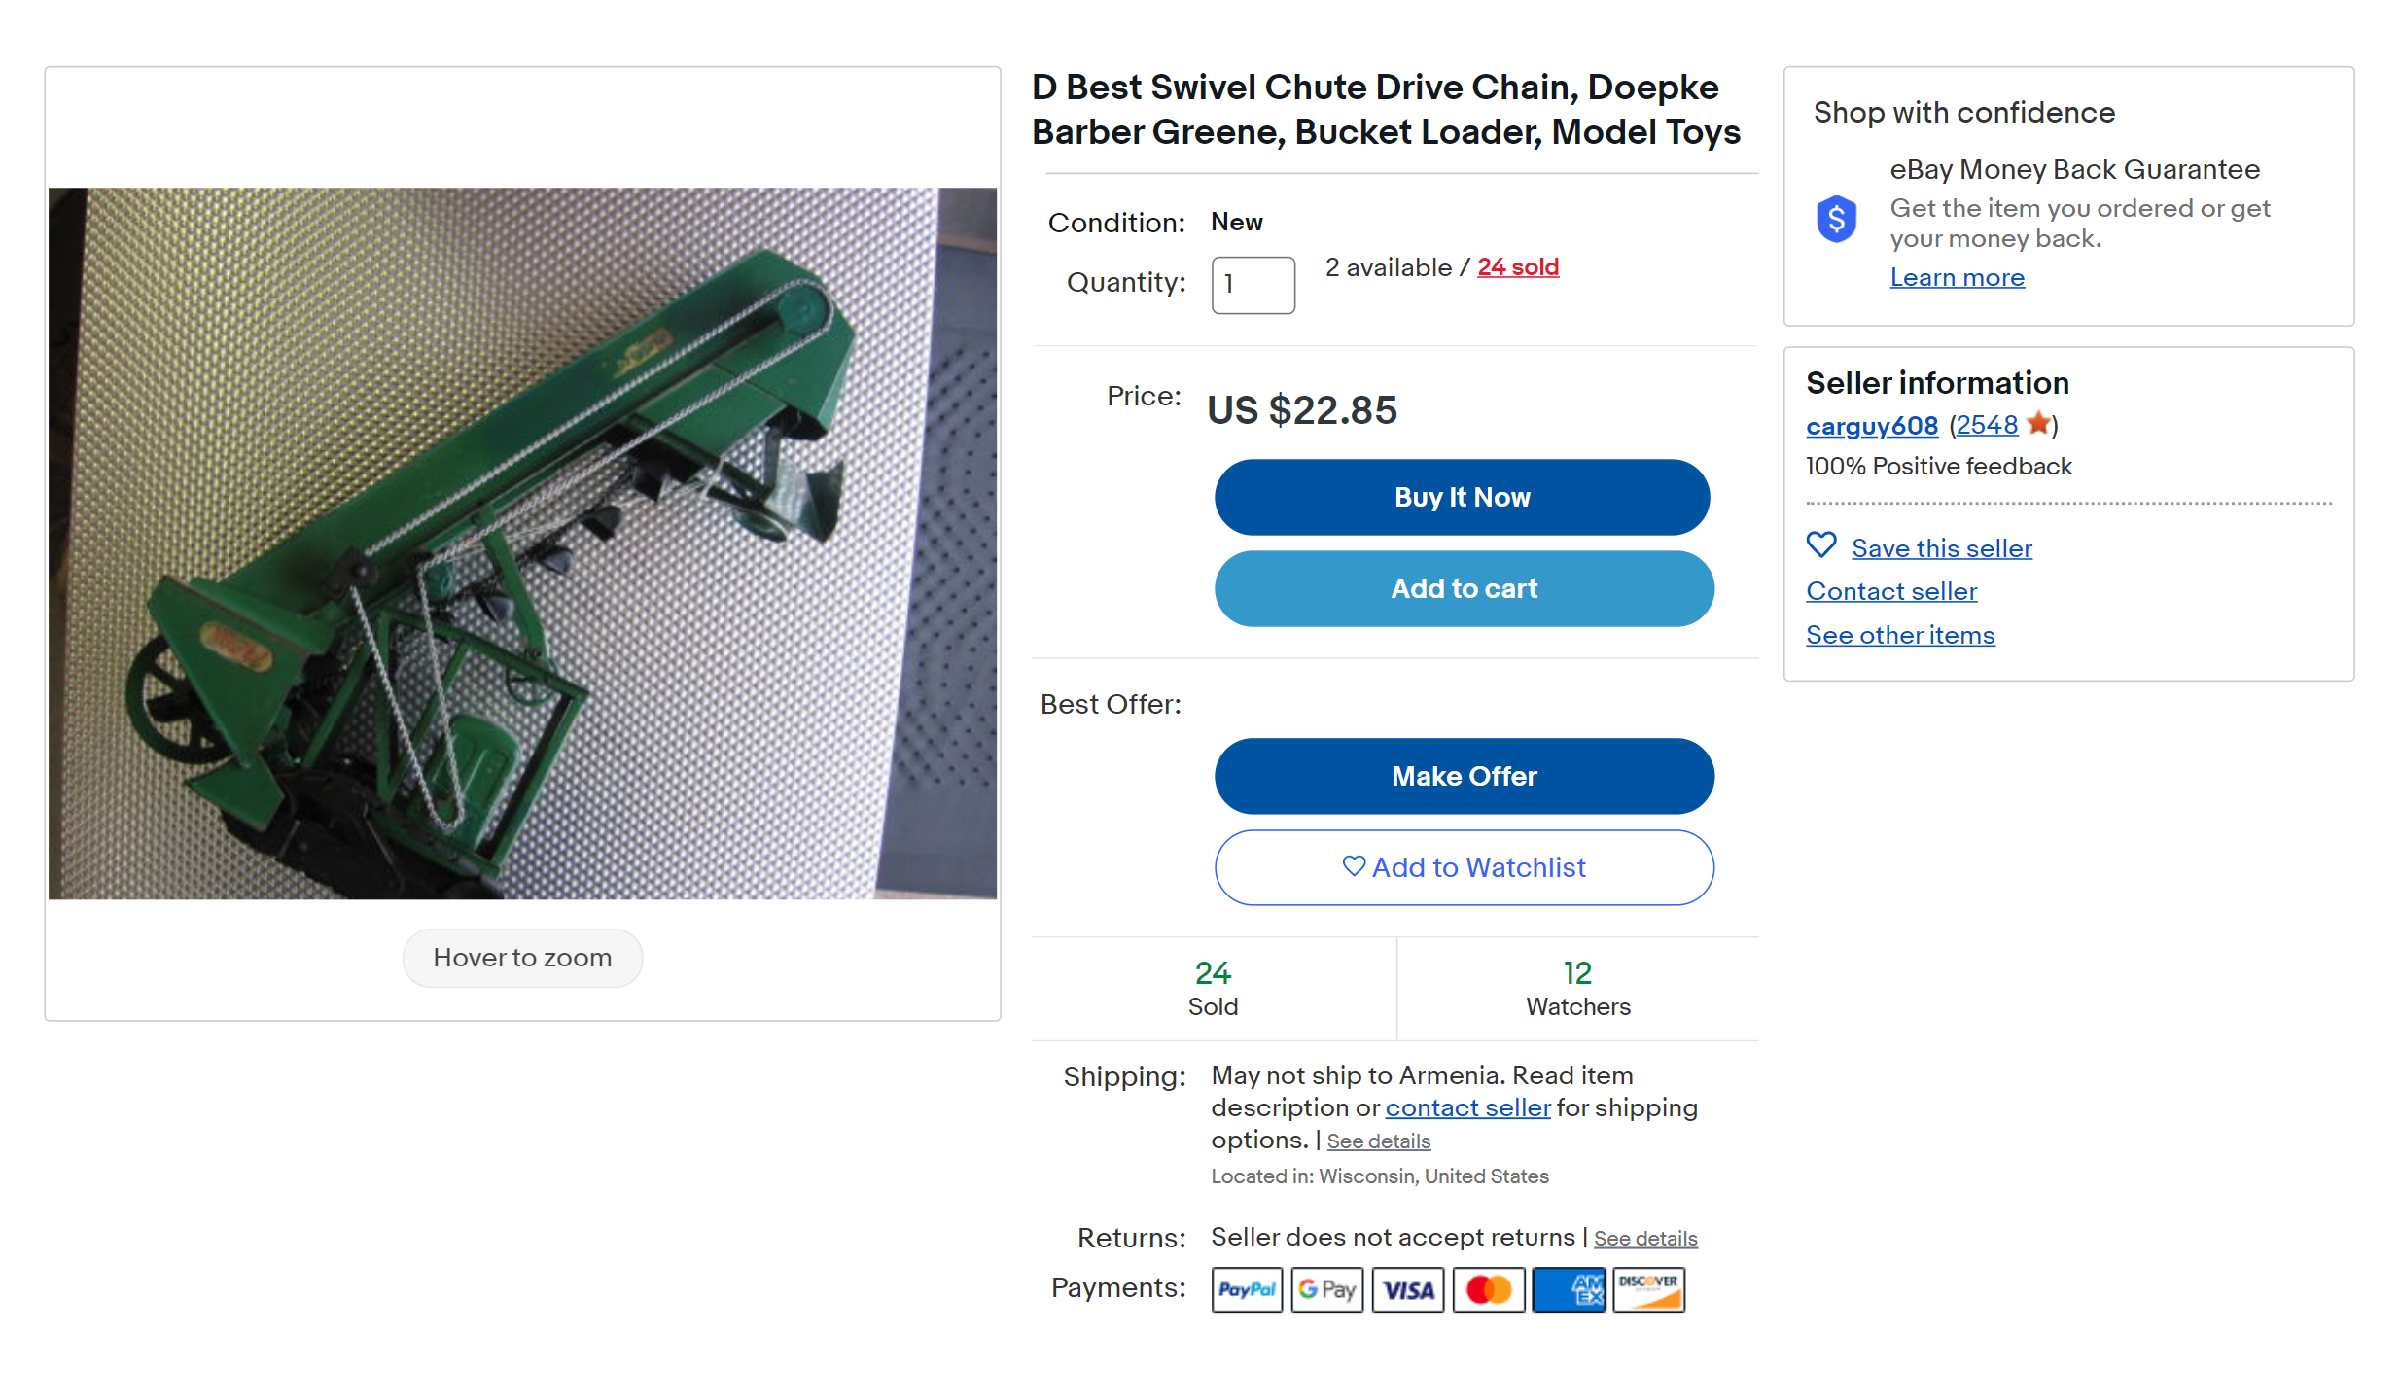 На этом фото — игрушечный погрузчик, и цена лота очень маленькая. Многие хотели бы его купить, но в заголовке указано, что продается только приводная цепь. Будет обидно, если кто⁠-⁠то купит лот и будет ждать, что ему пришлют целый погрузчик. Источник: ebay.com